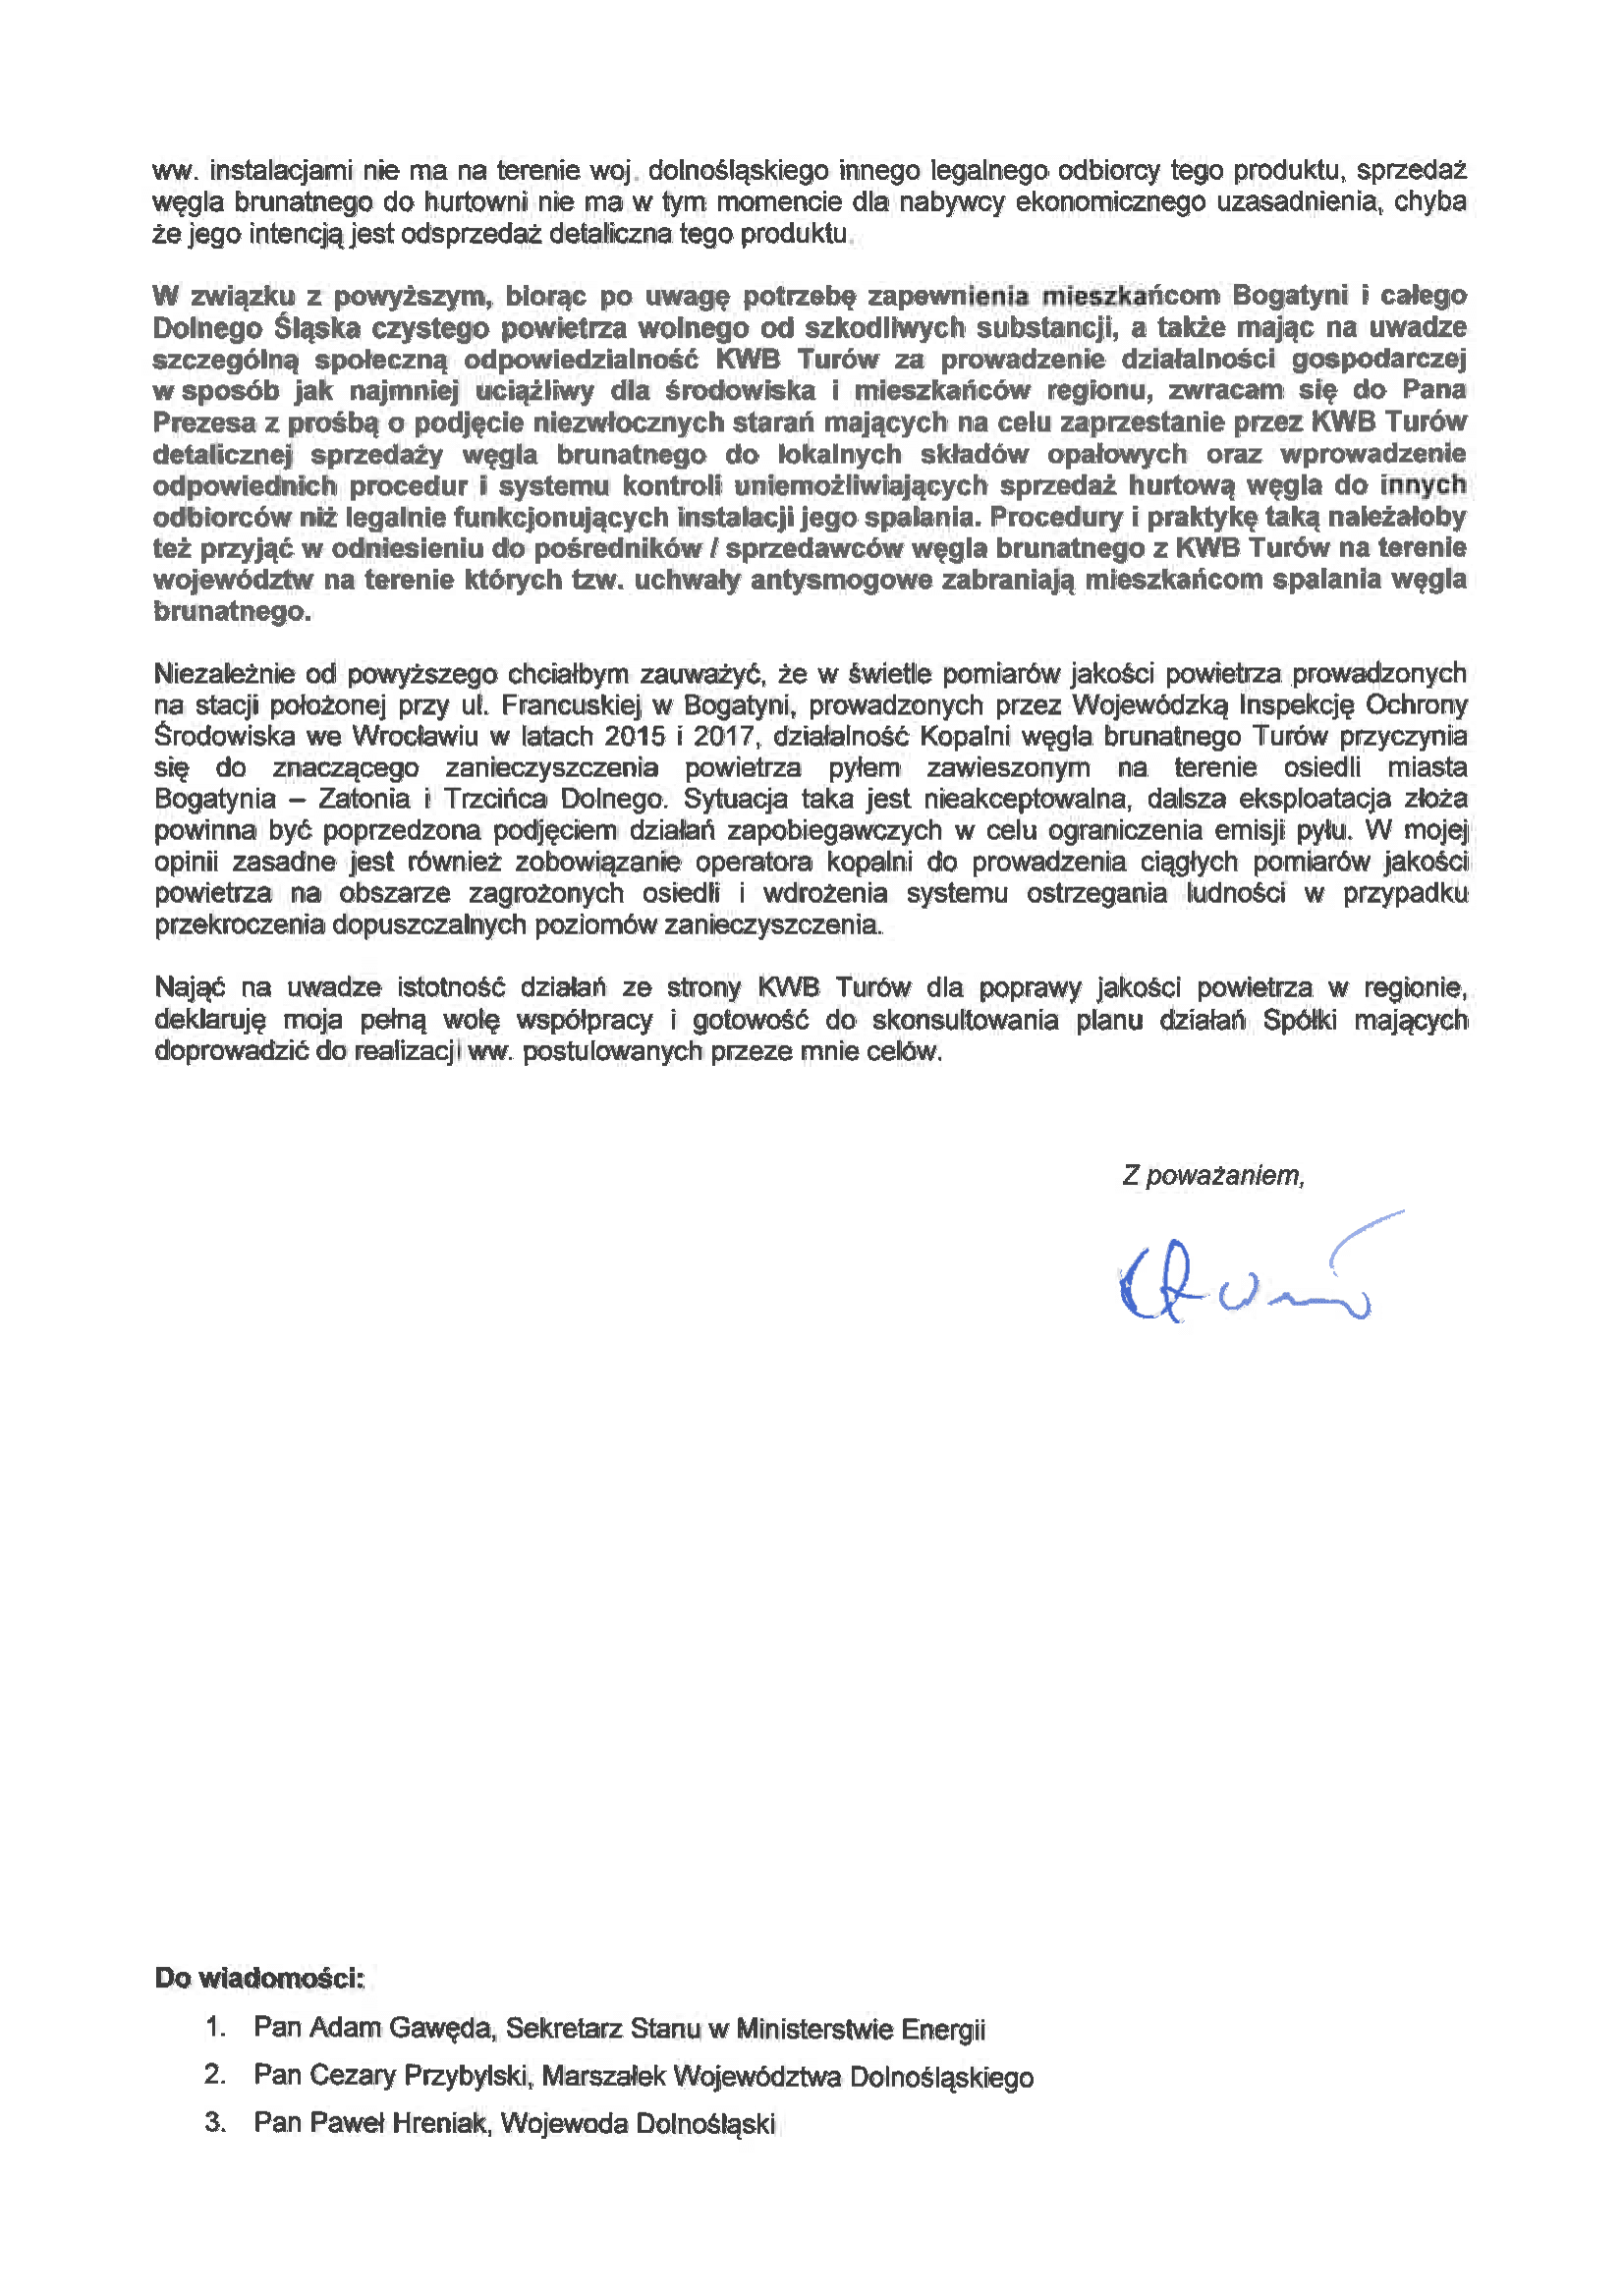 •	List Pełnomocnika Rządu, Piotra Woźnego, do władz PGE